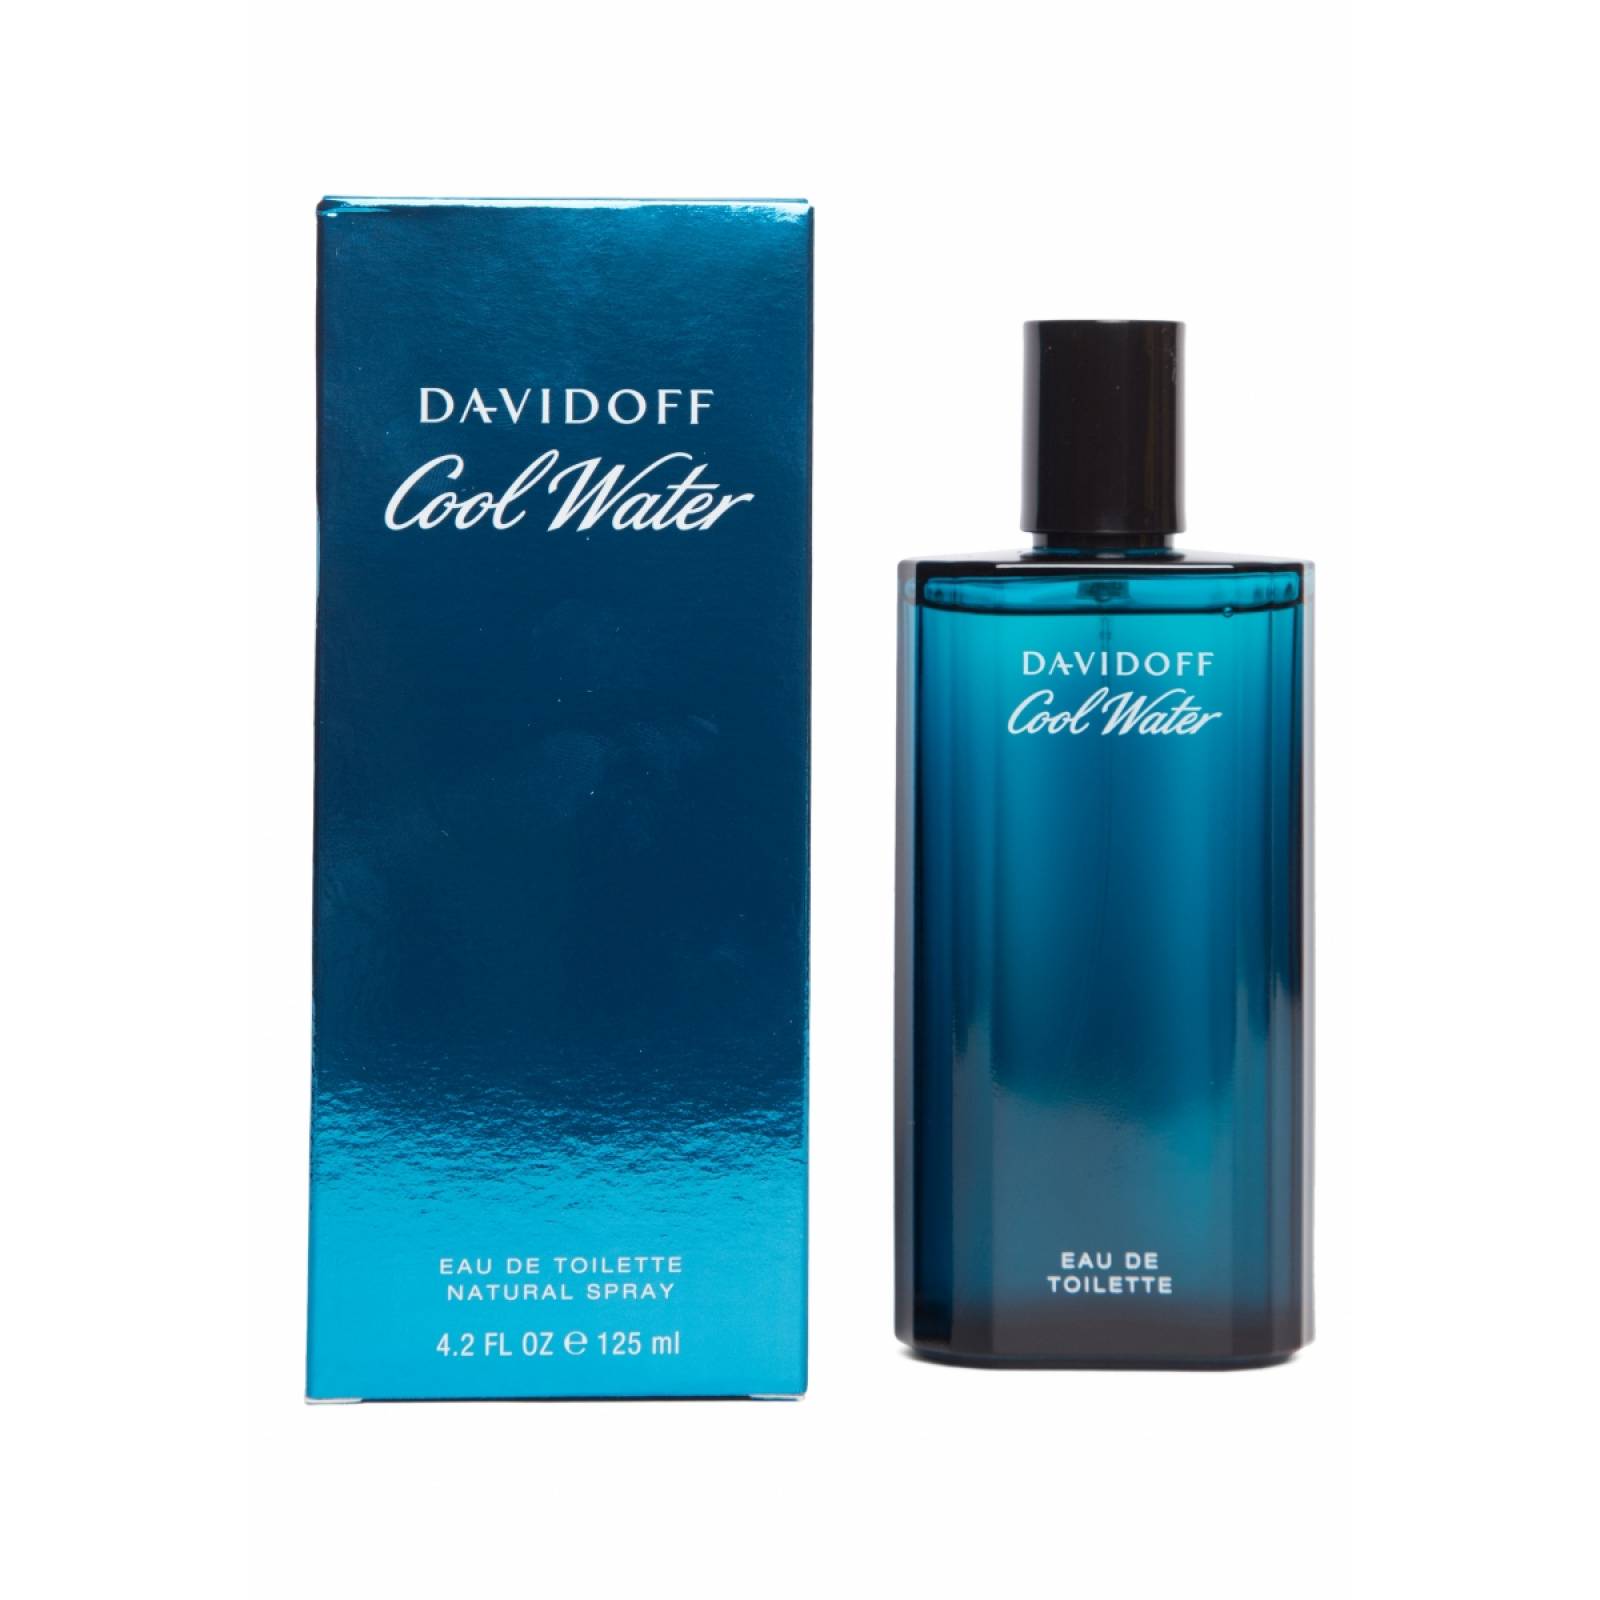 Perfume Davidoff by Davidoff